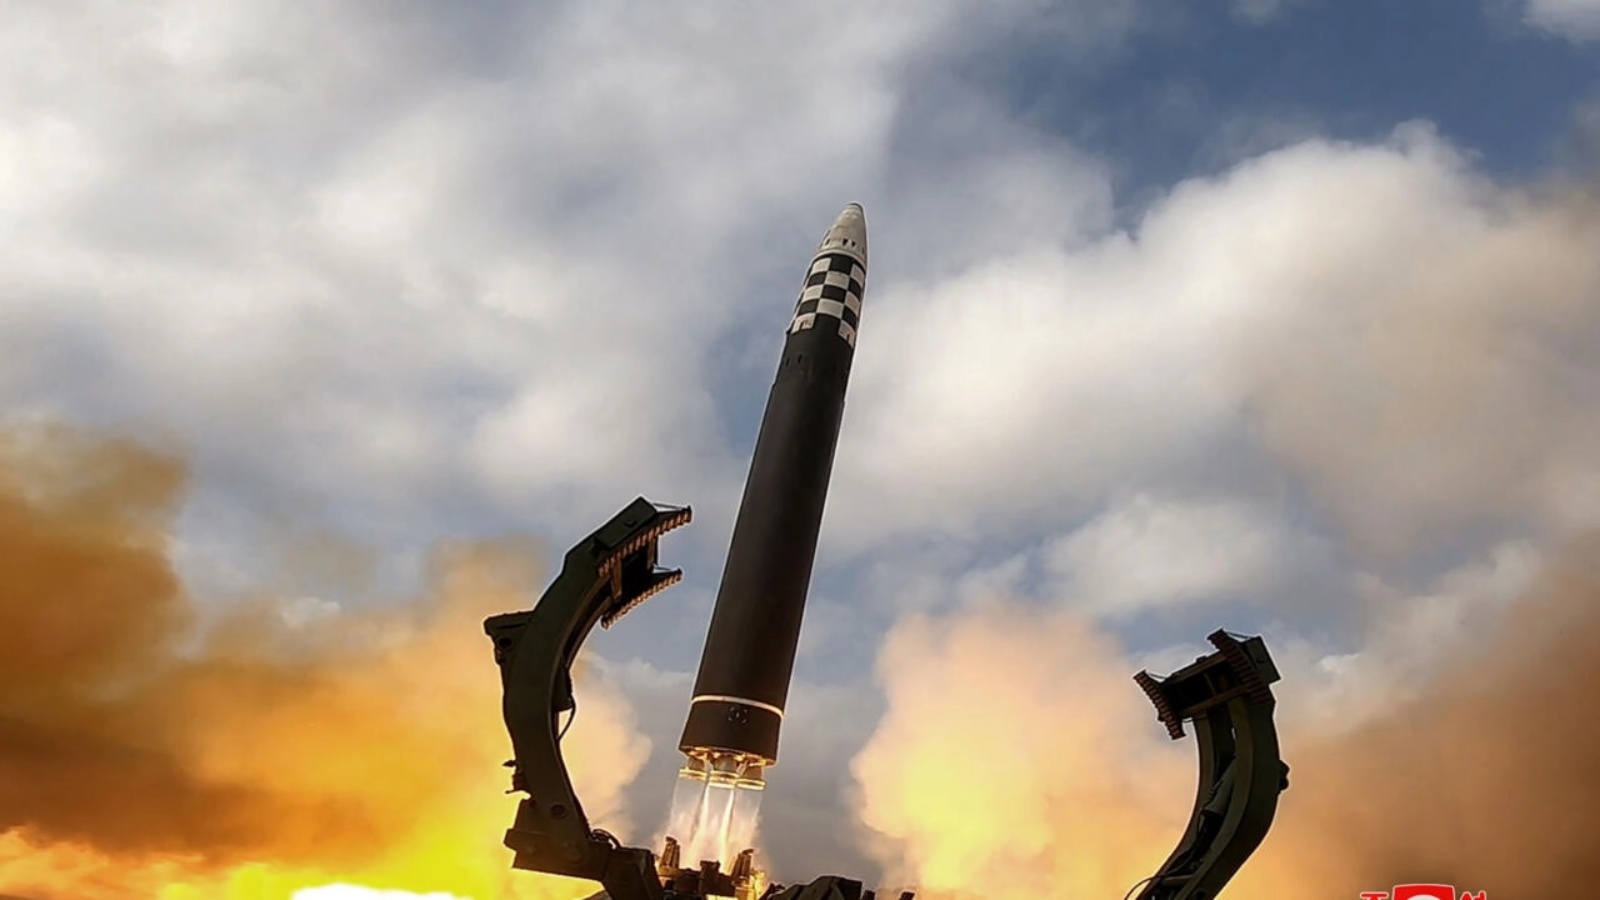 صورة نشرتها وكالة الانباء الكورية الشمالية في 19 نوفمبر لإطلاق صاروخ بالستي عابر للقارات 